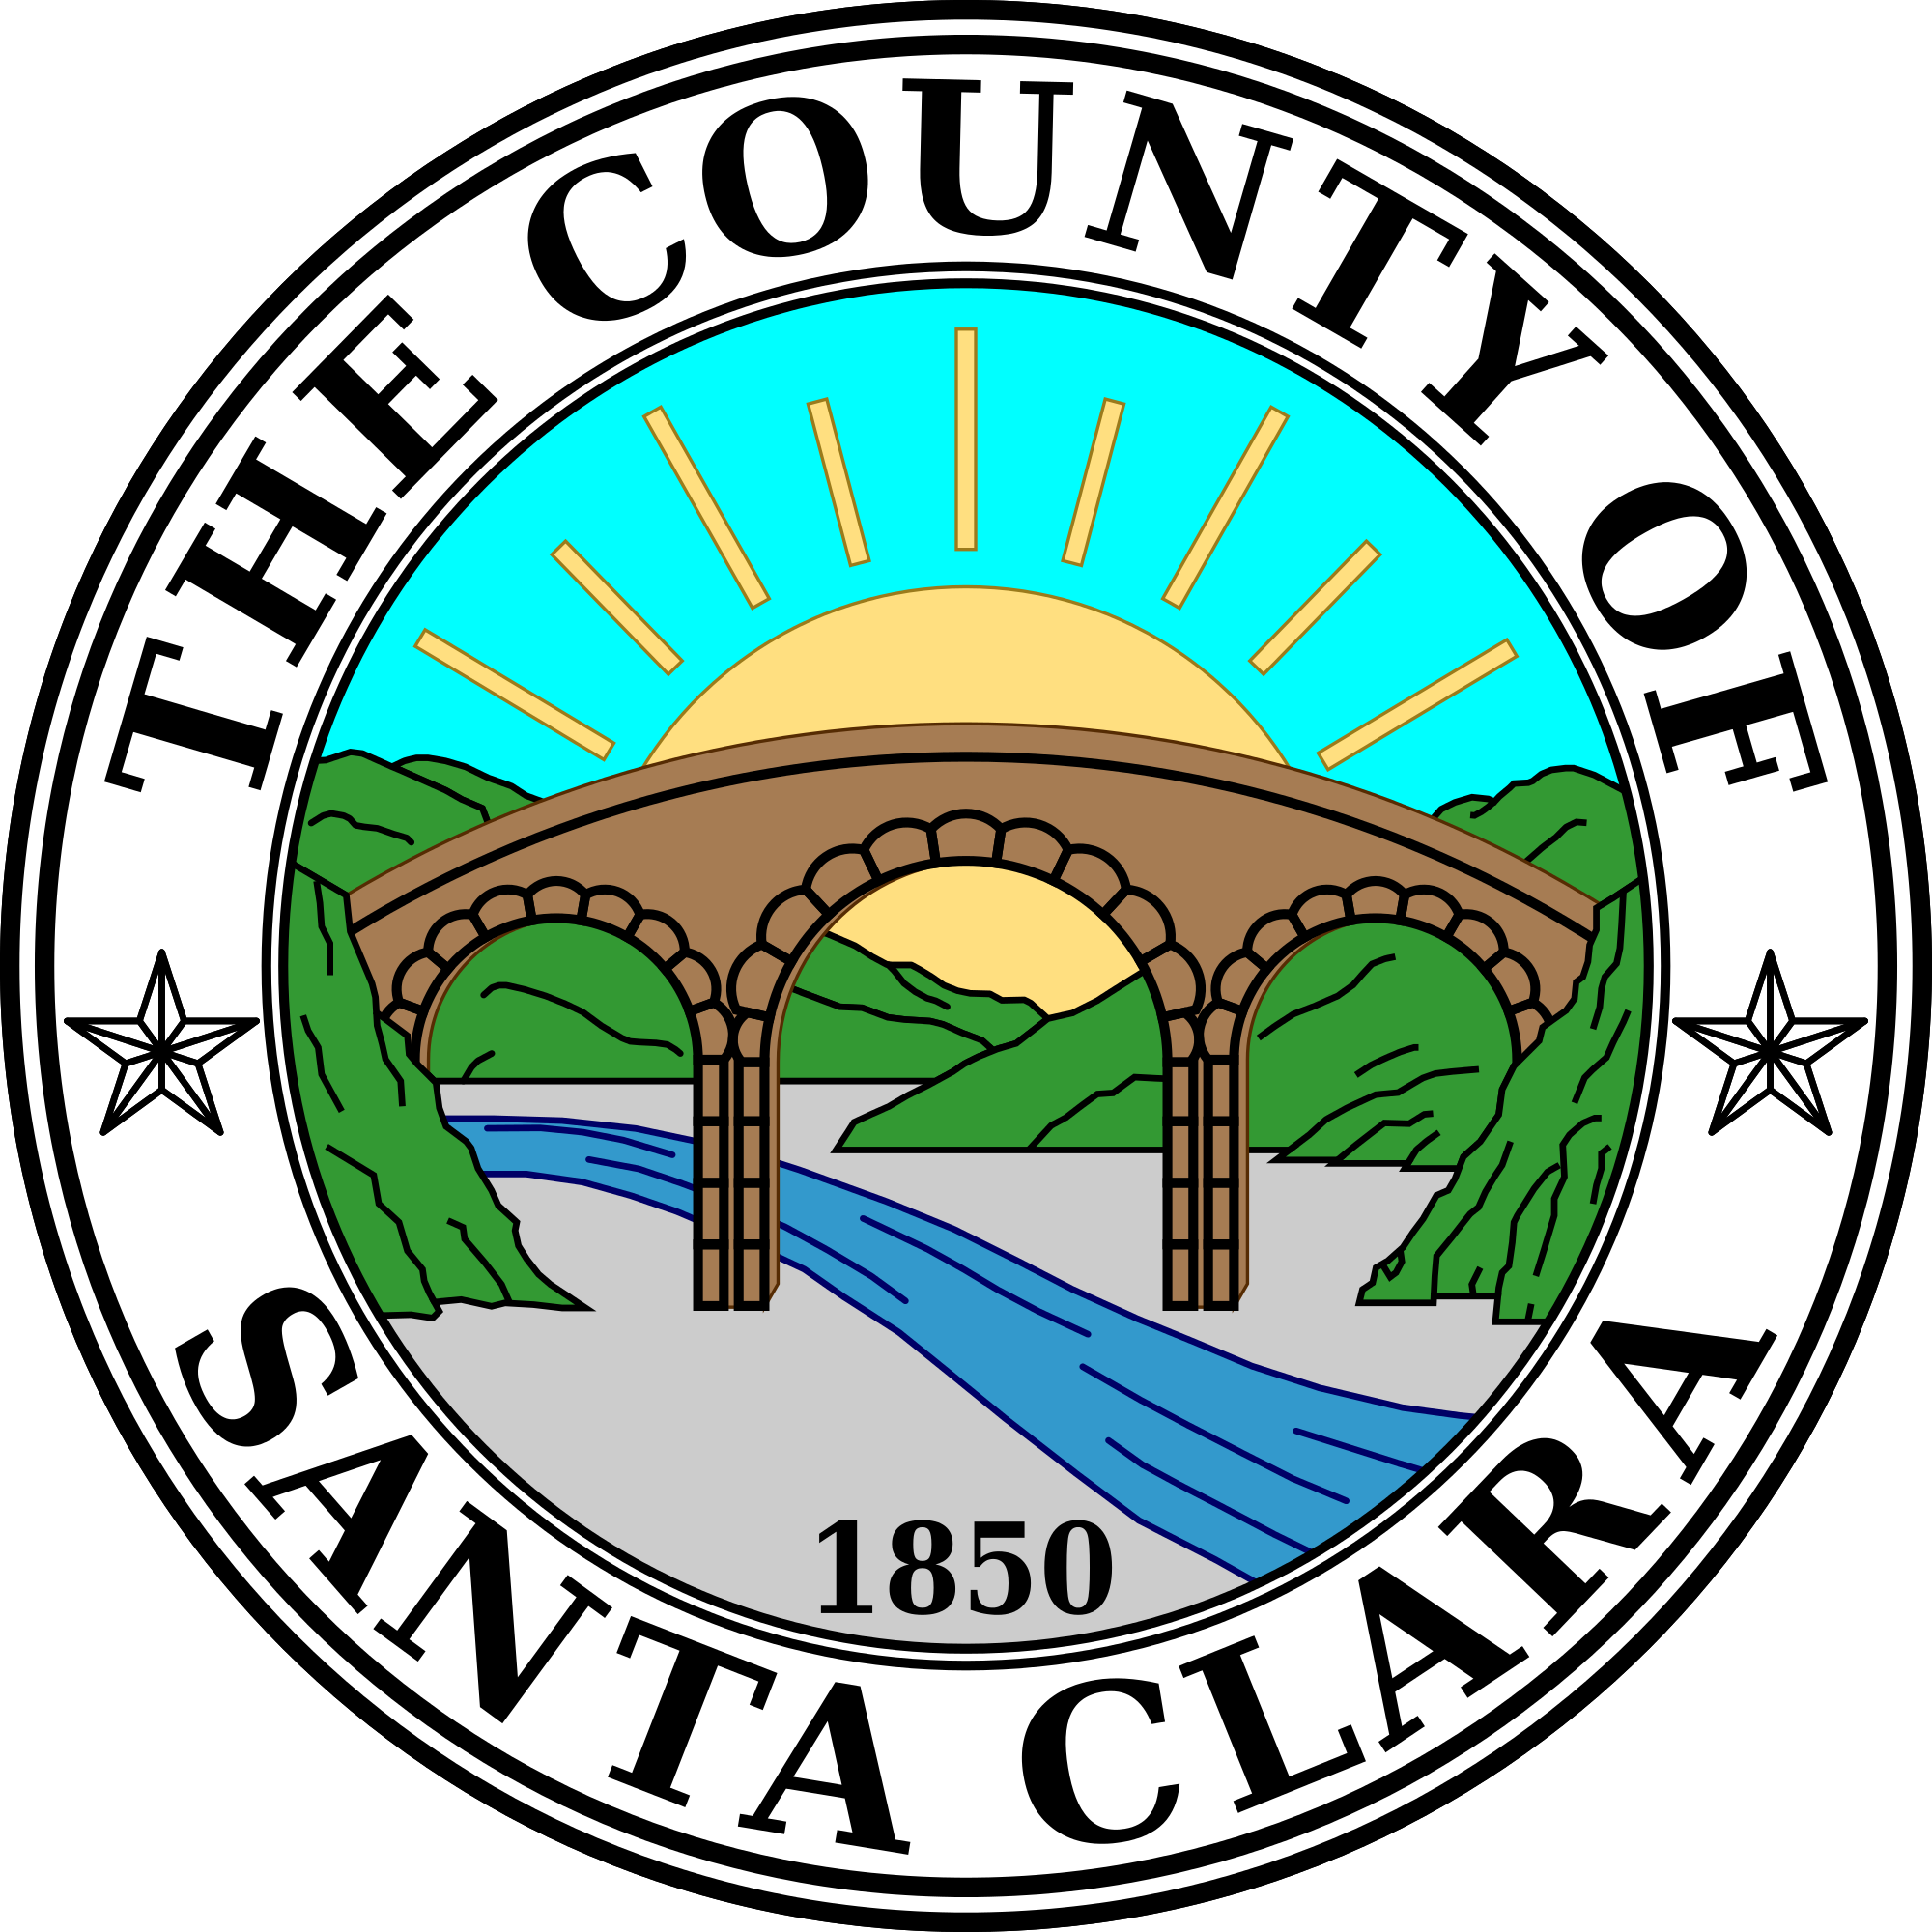 County-of-Santa-Clara-logo.png